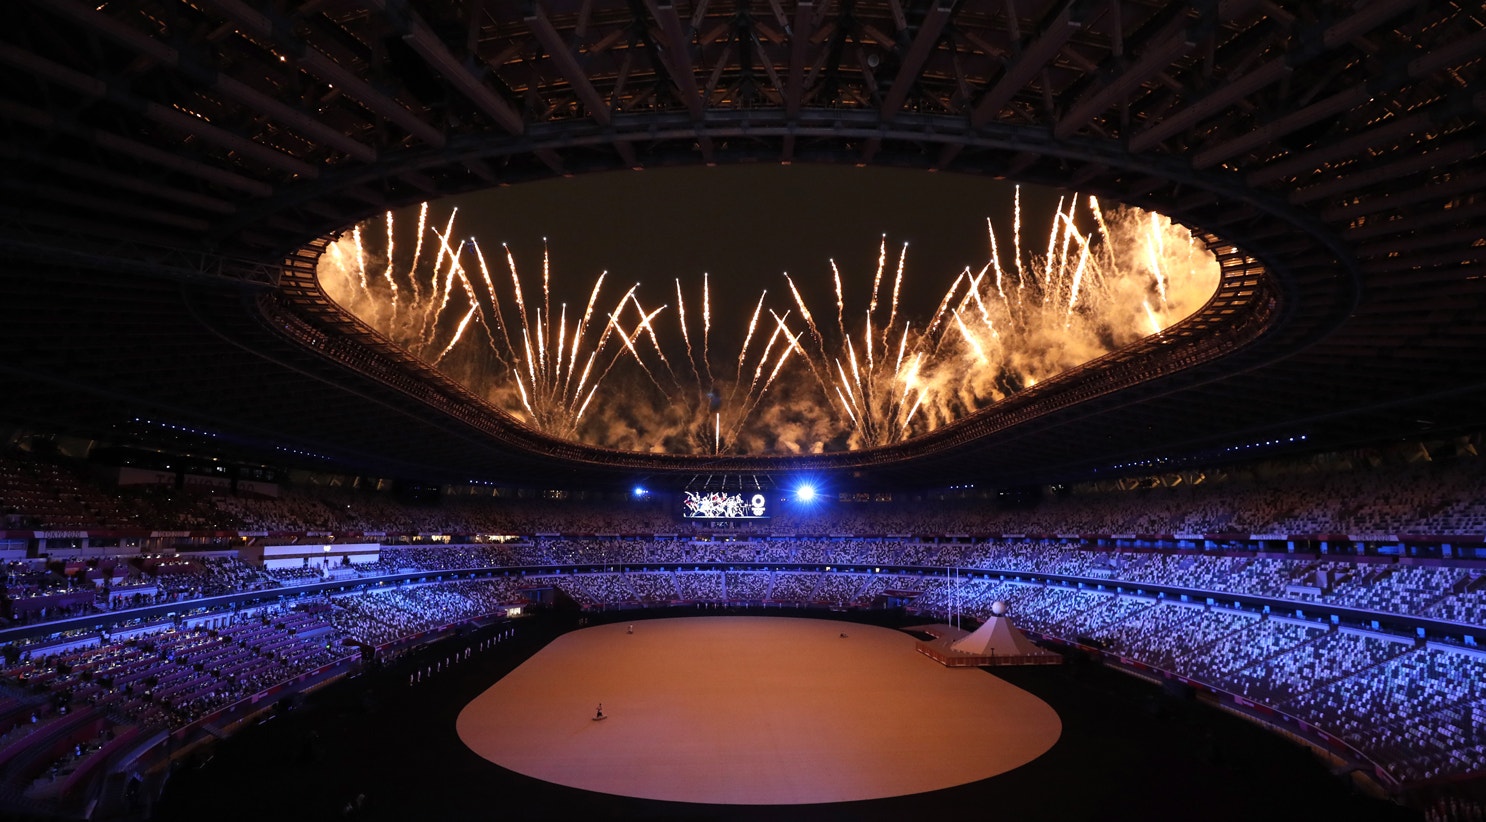 Os porta-estandartes de Portugal na Cerimônia de Abertura dos Jogos  Olímpicos de Inverno Beijing 2022